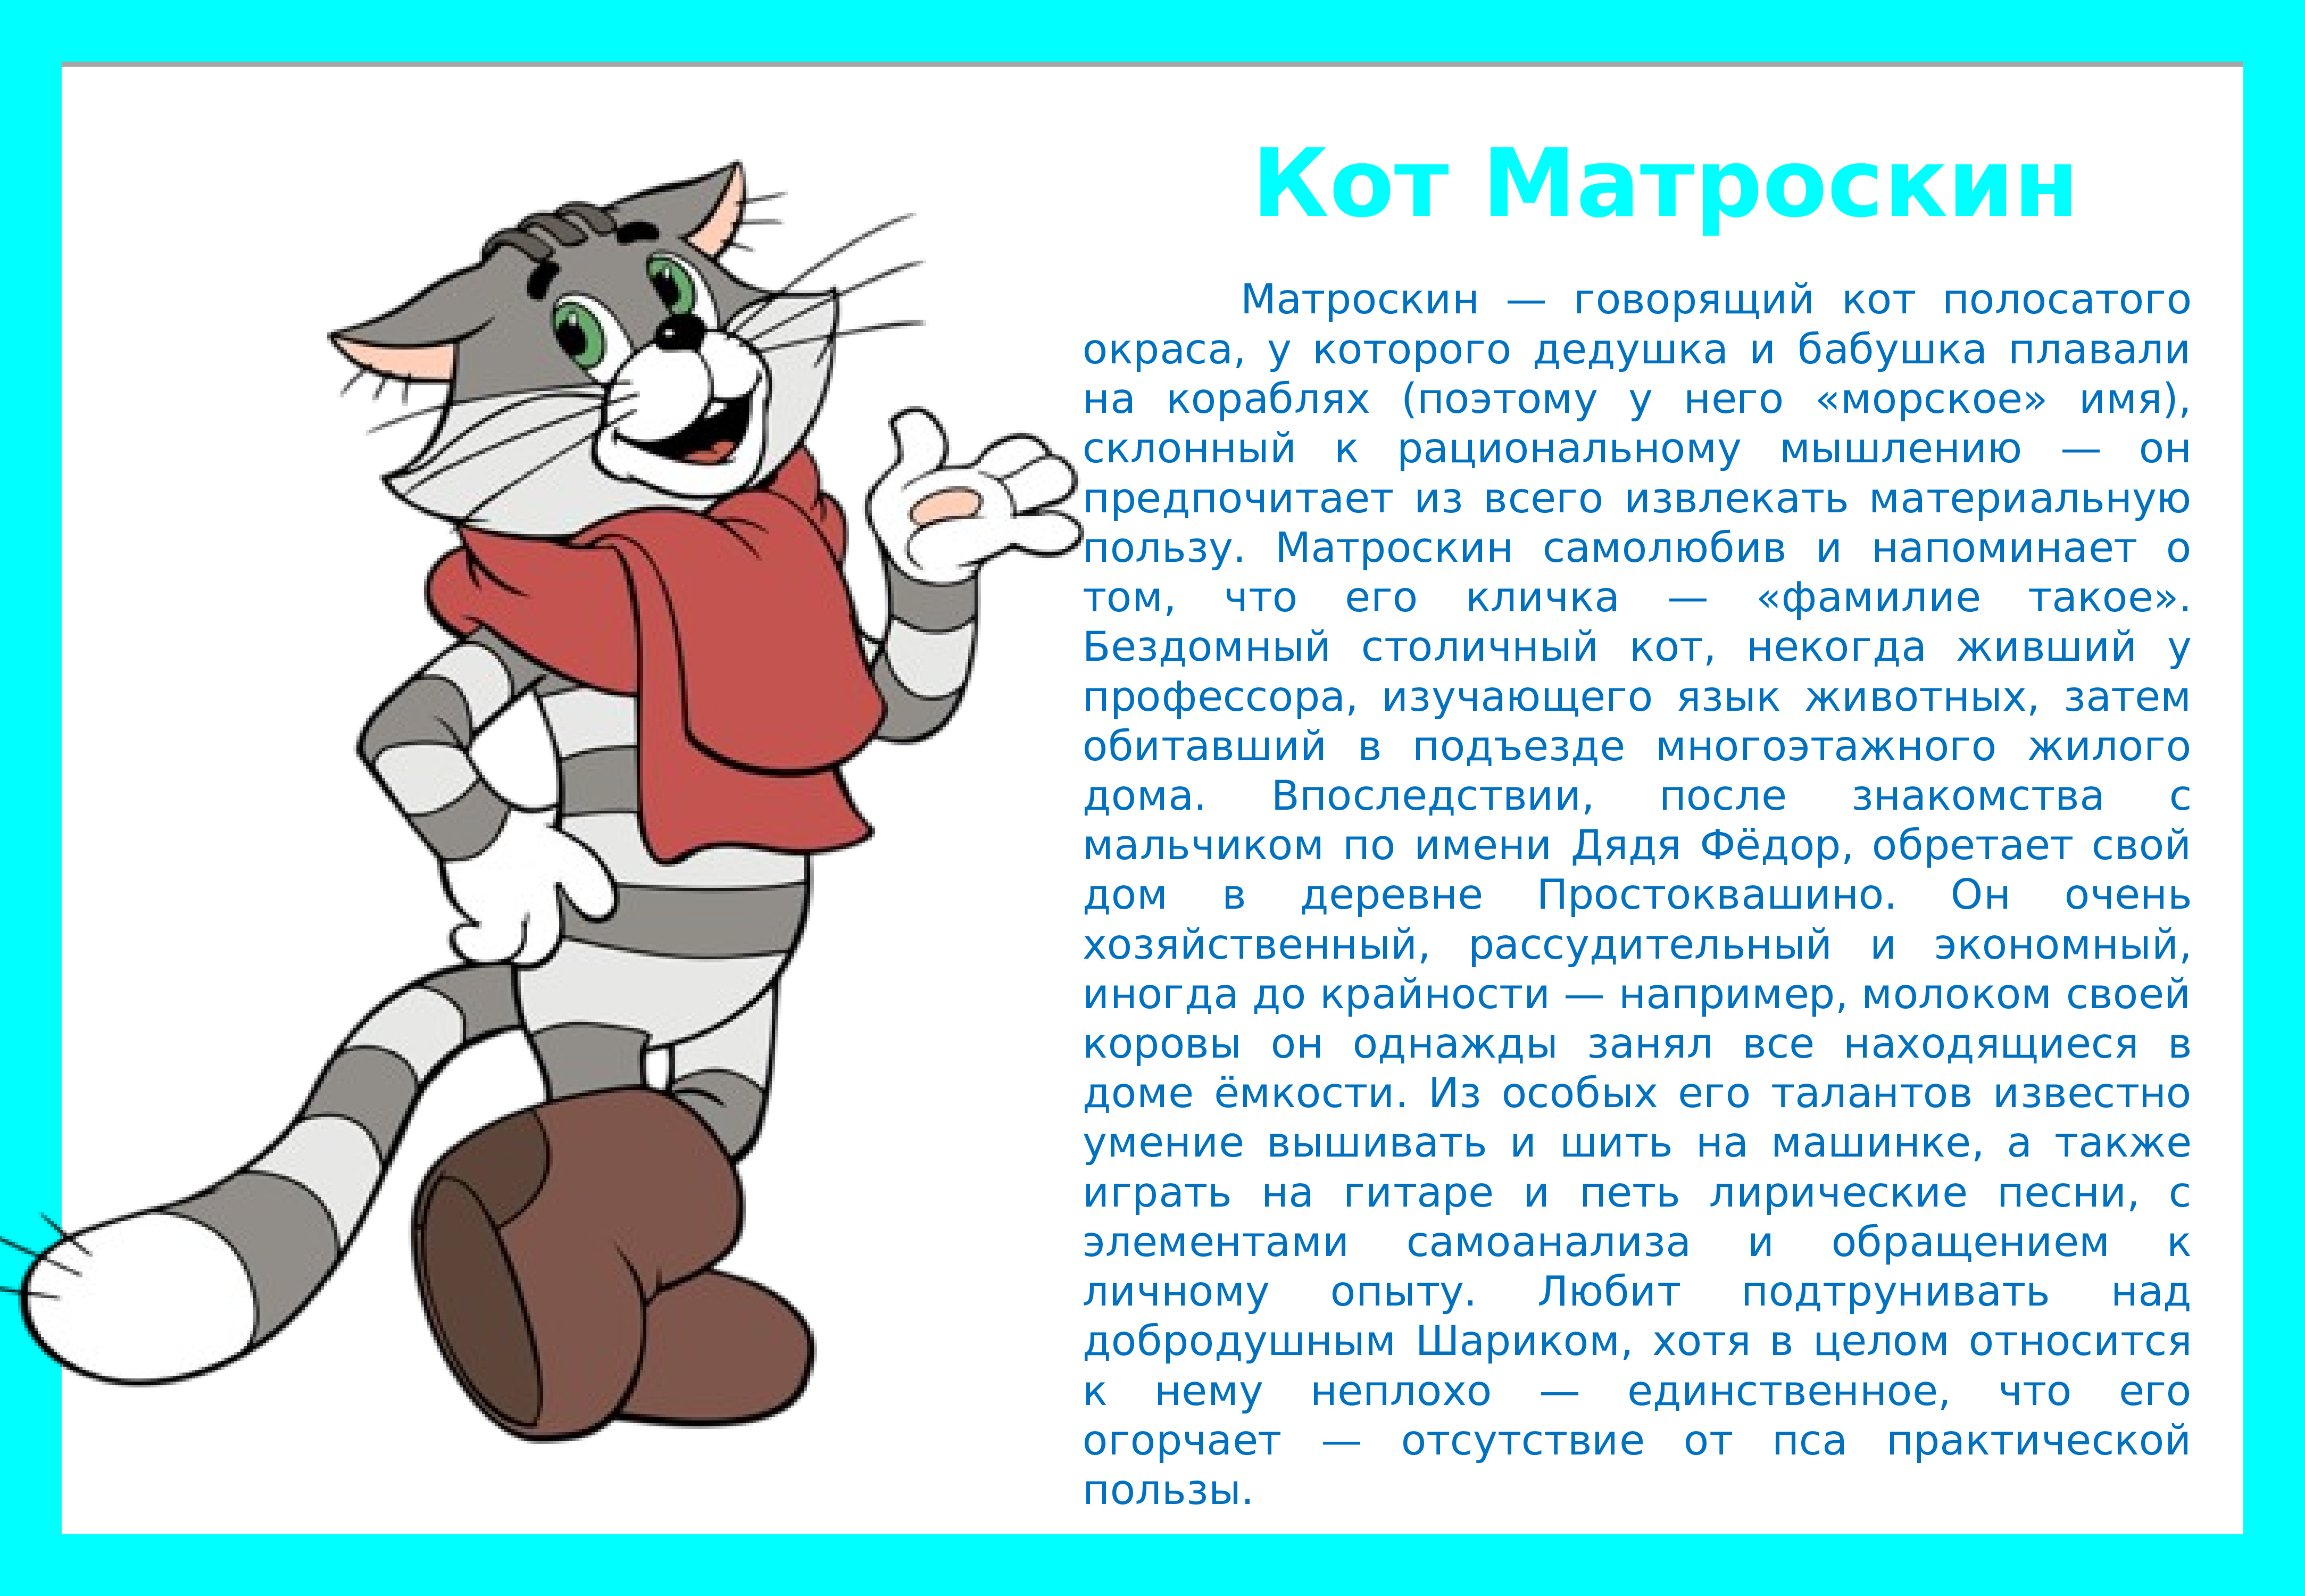 Краткая характеристика кота Матроскина